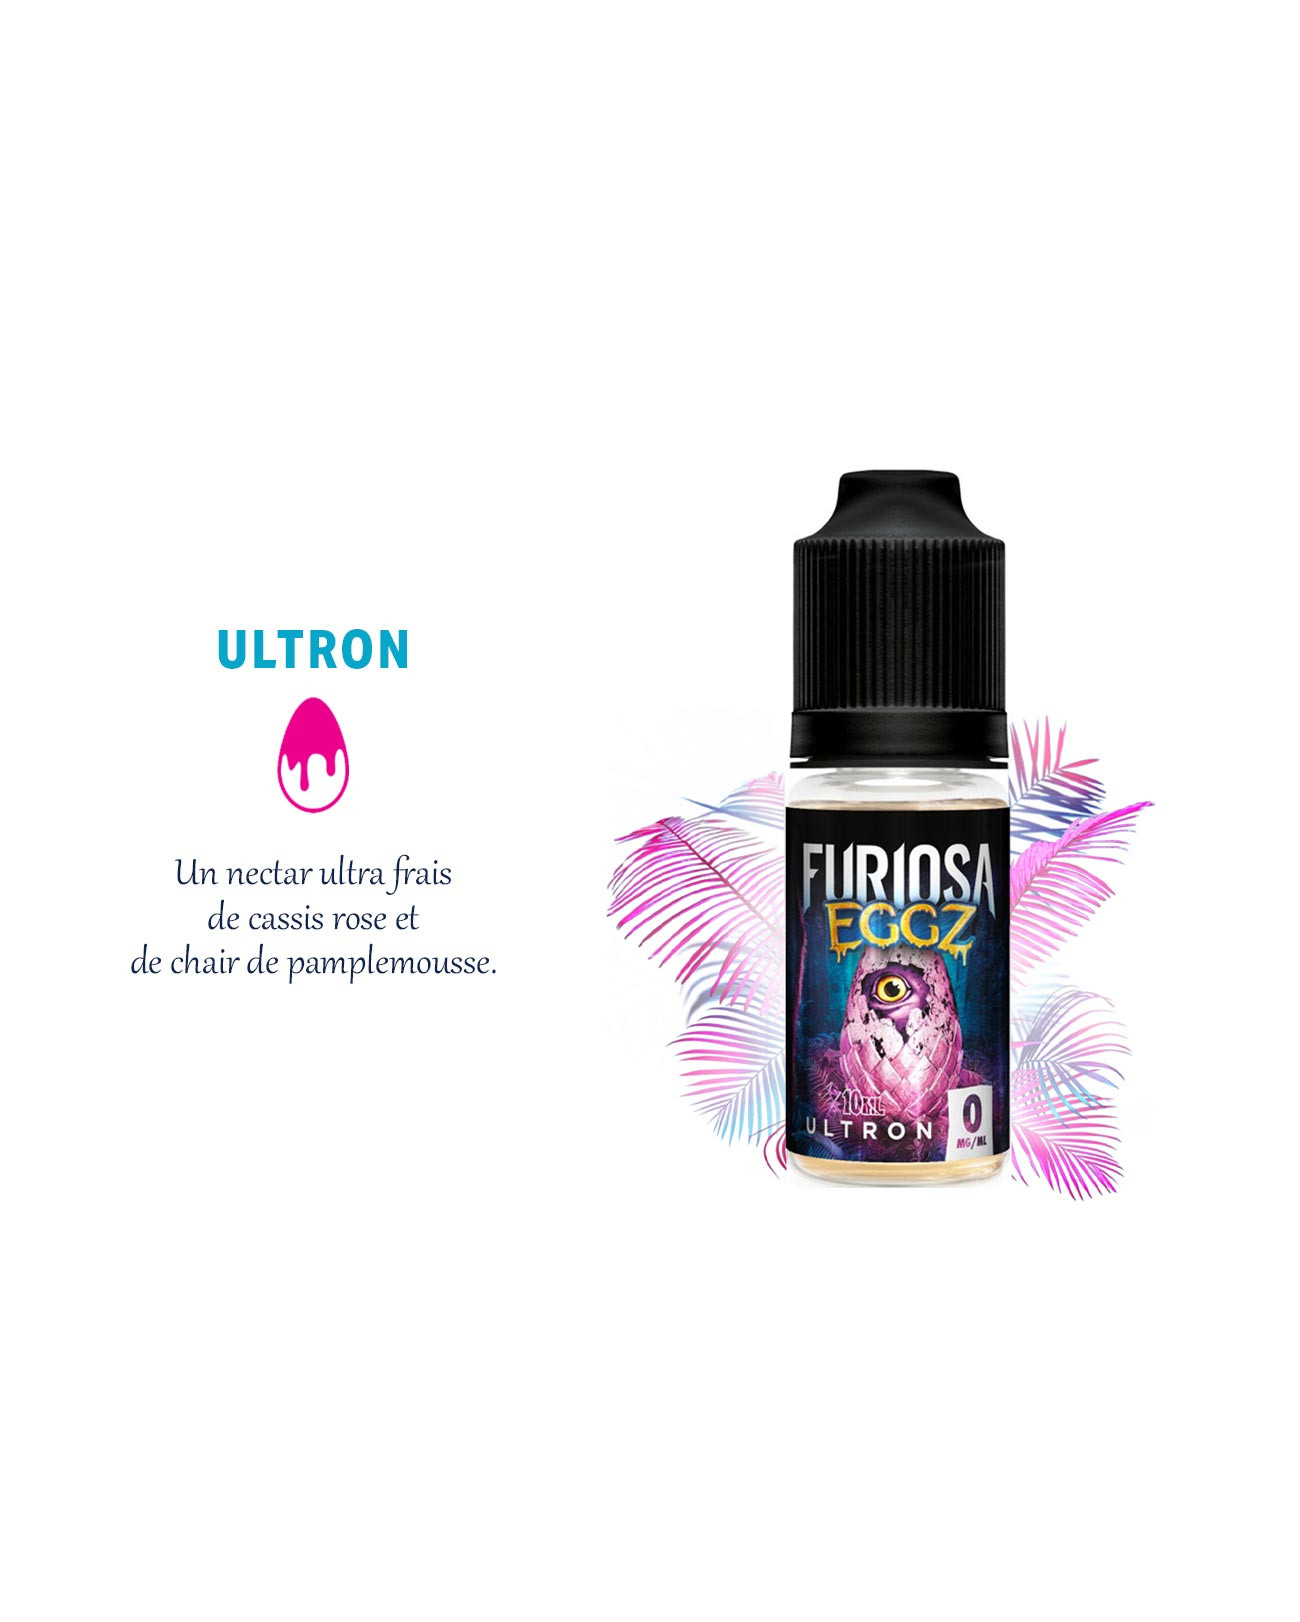 Ultron, le e-liquide ultra frais qui bouscule les papilles avec son mix de cassis rose et de pamplemousse